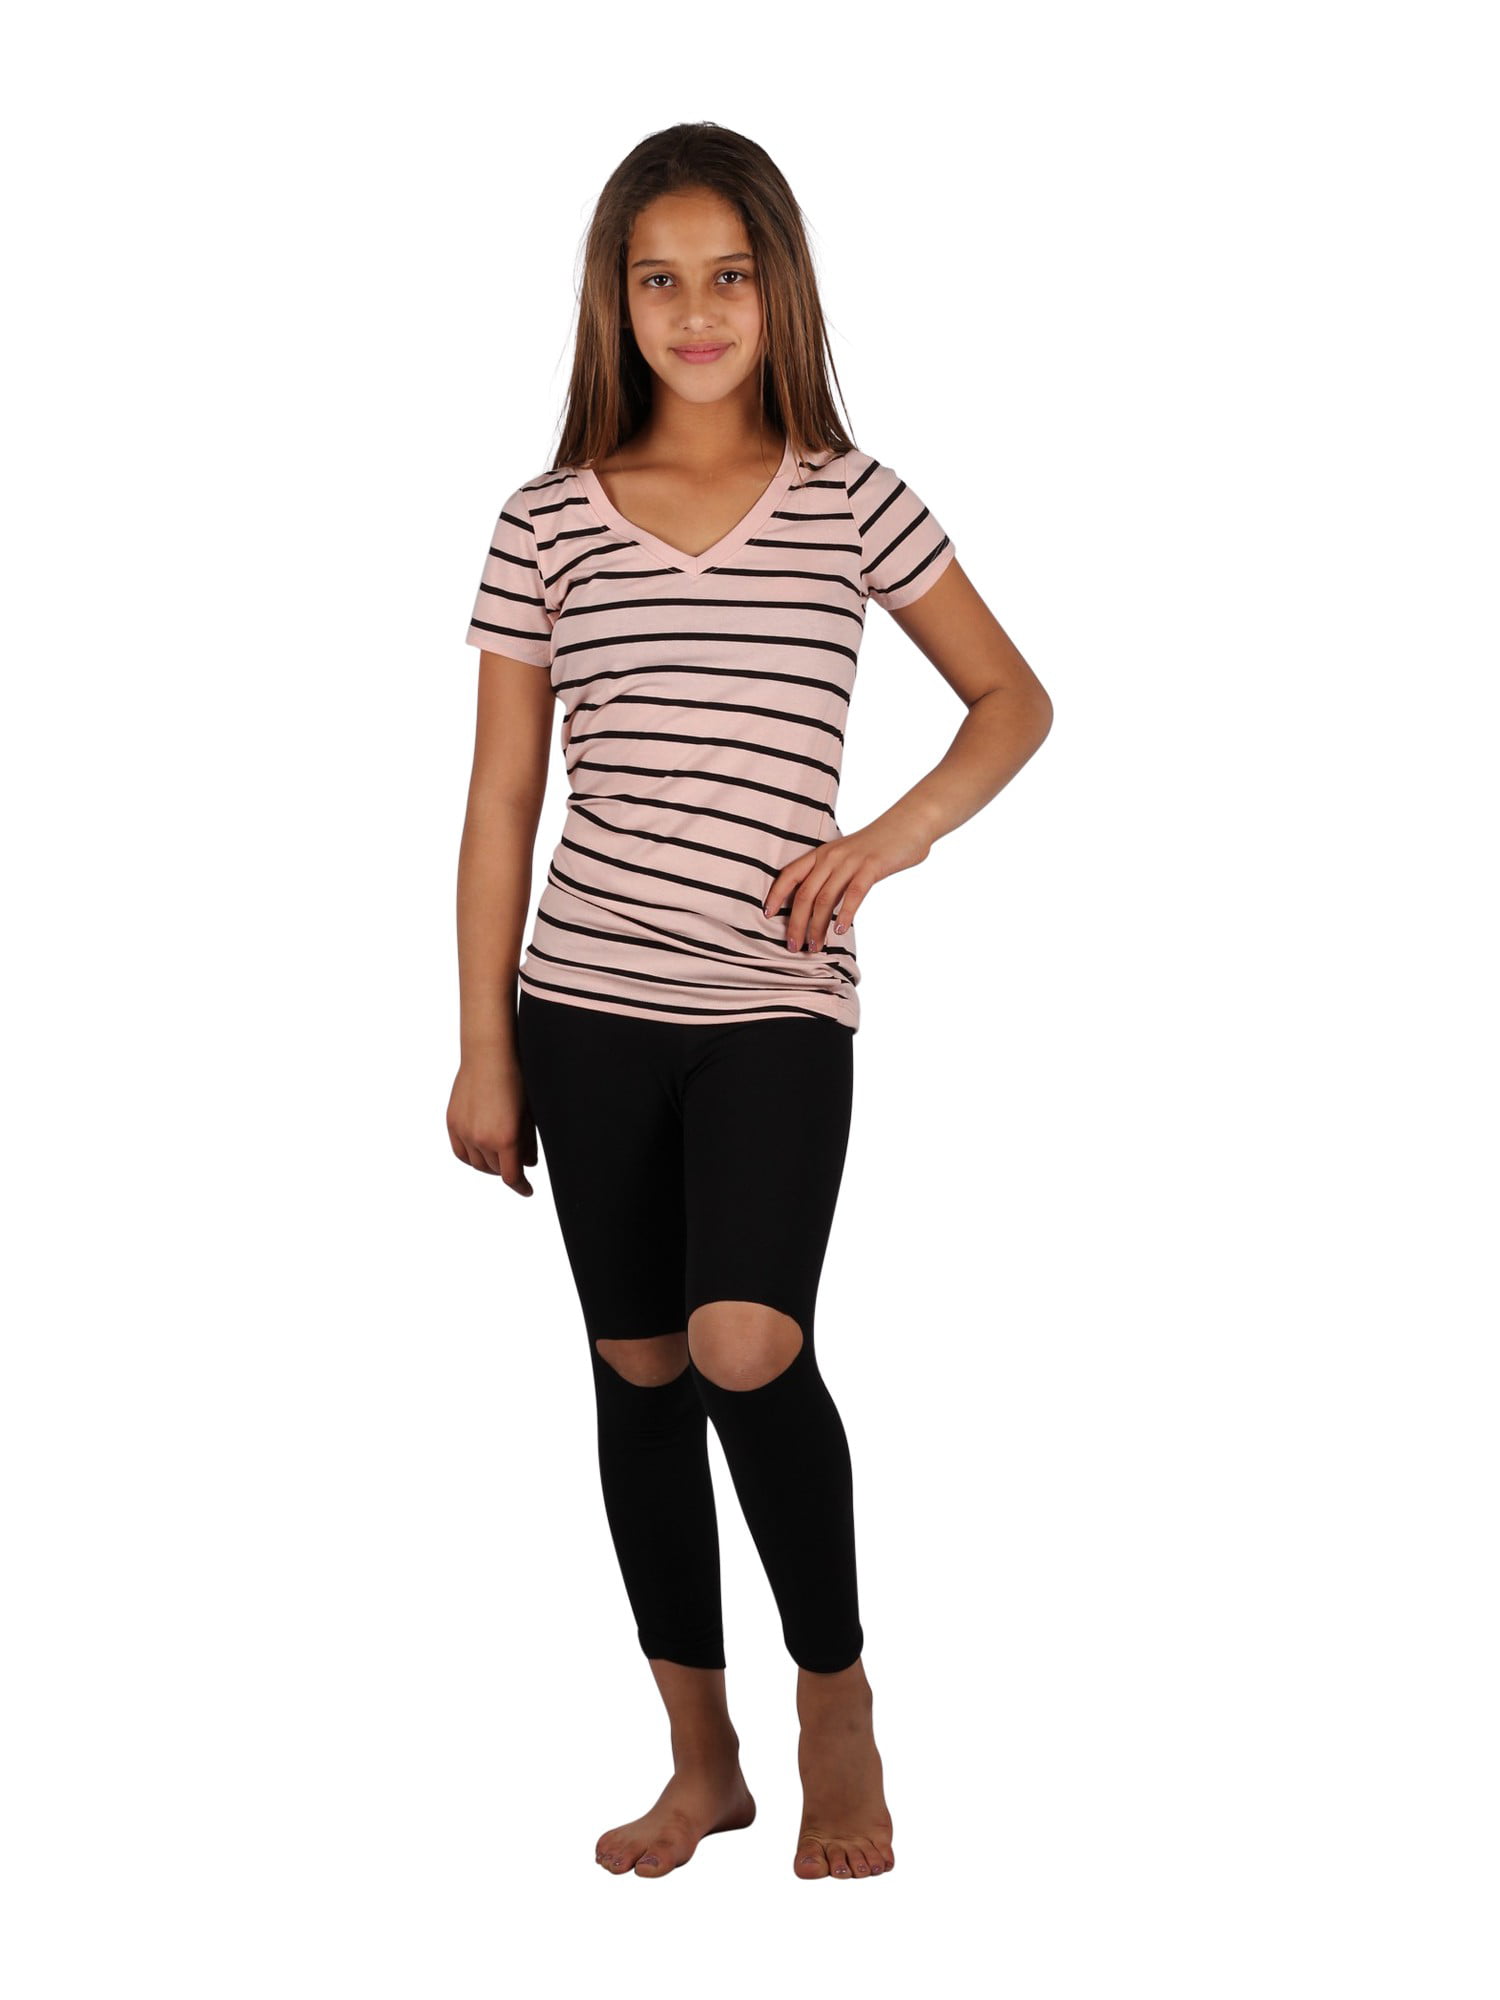 Lori & Jane Big Girls Pink Gray Stripe Love Summer Leggings Outfit Set 6-14 